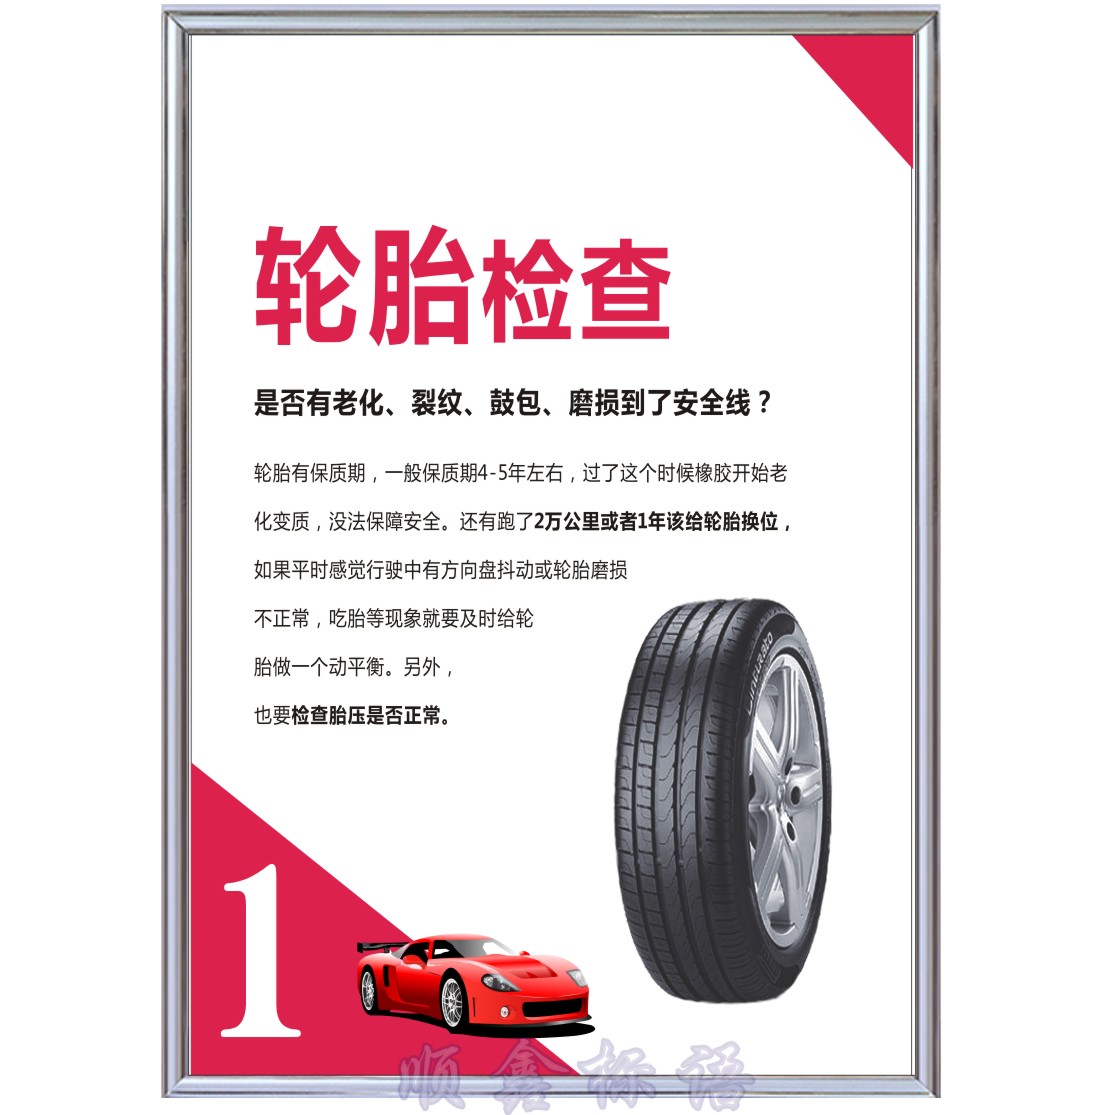 轮胎检测汽车美容车辆轮胎规格参数常识轮胎保养广告宣传贴纸海报